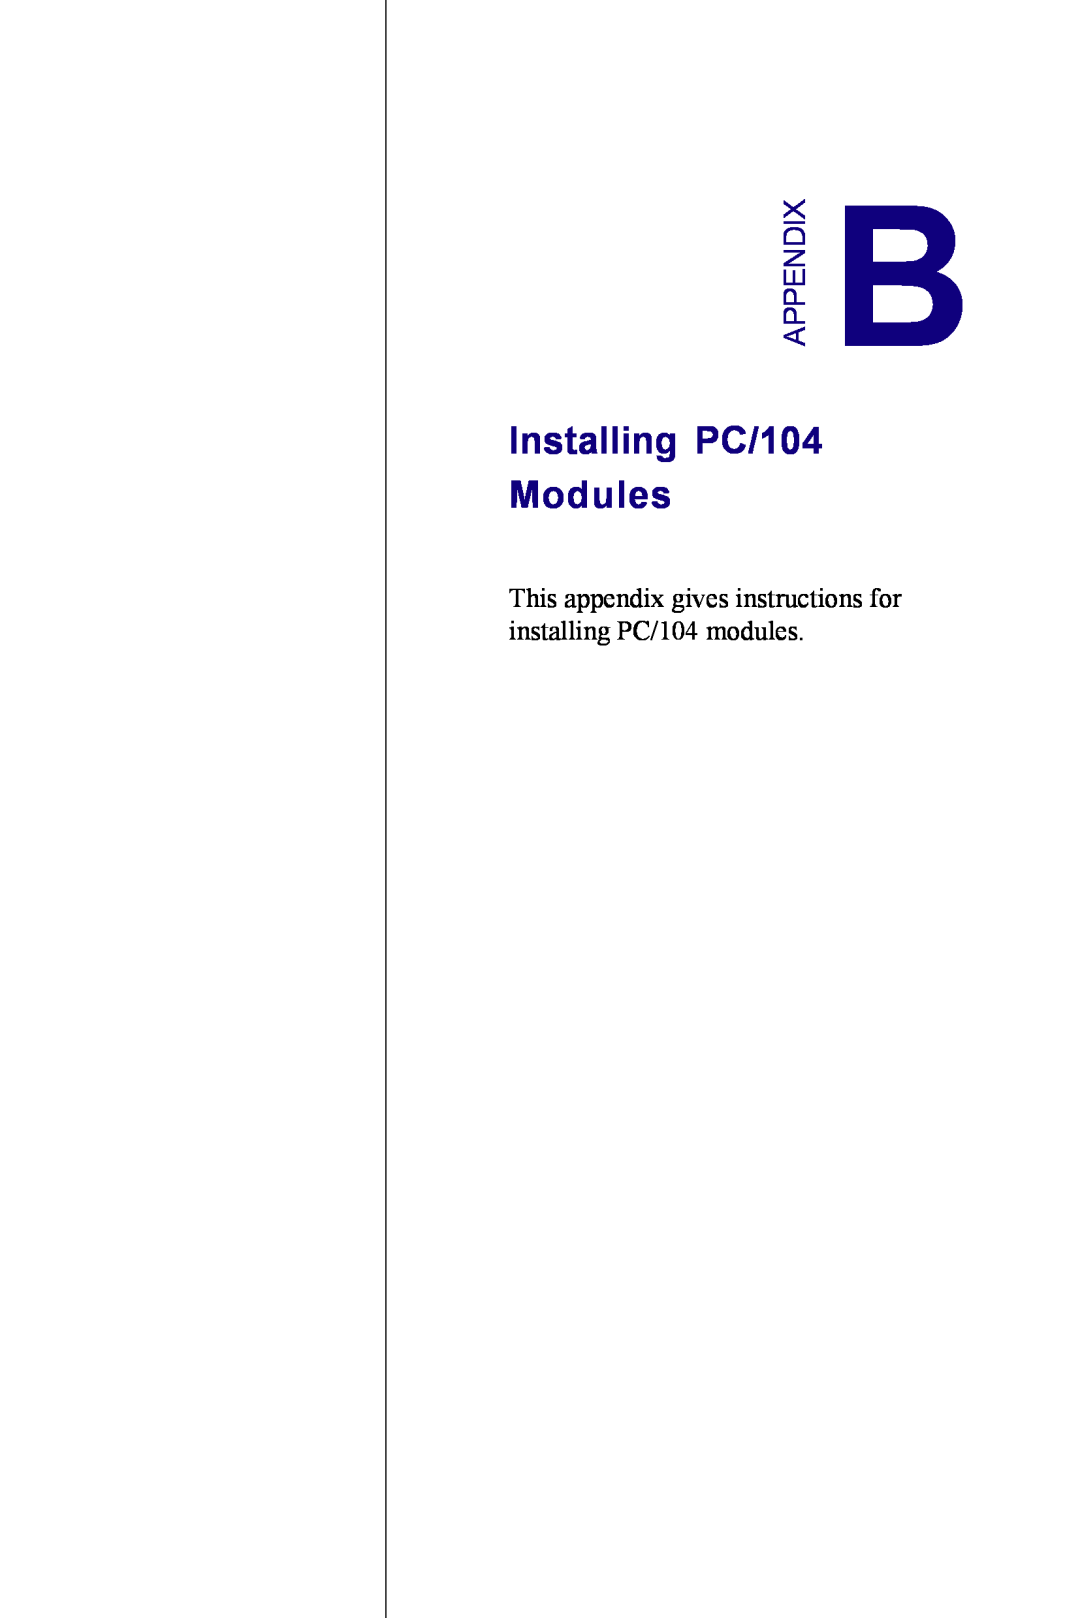 Advantech PCM-3350 Series user manual Installing PC/104 Modules, Appendix 